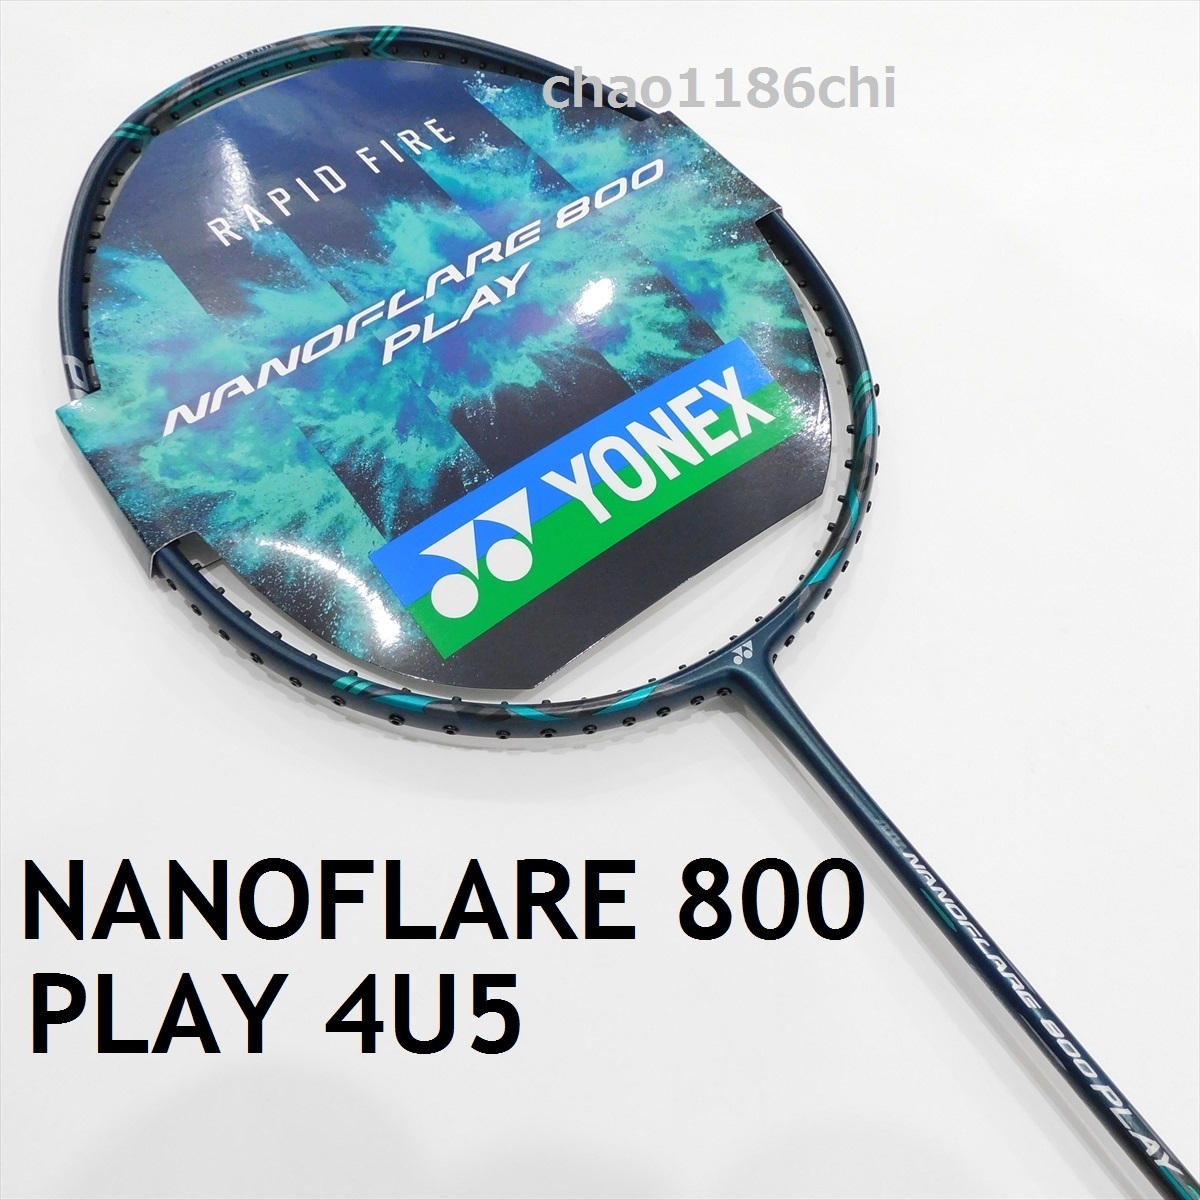 送料込/新品/ヨネックス/4U5/NANOFLARE 800 PLAY/ナノフレア800プレイ/NF-800P/ナノフレア800プロ//ナノフレア800ゲーム/ナノフレア800